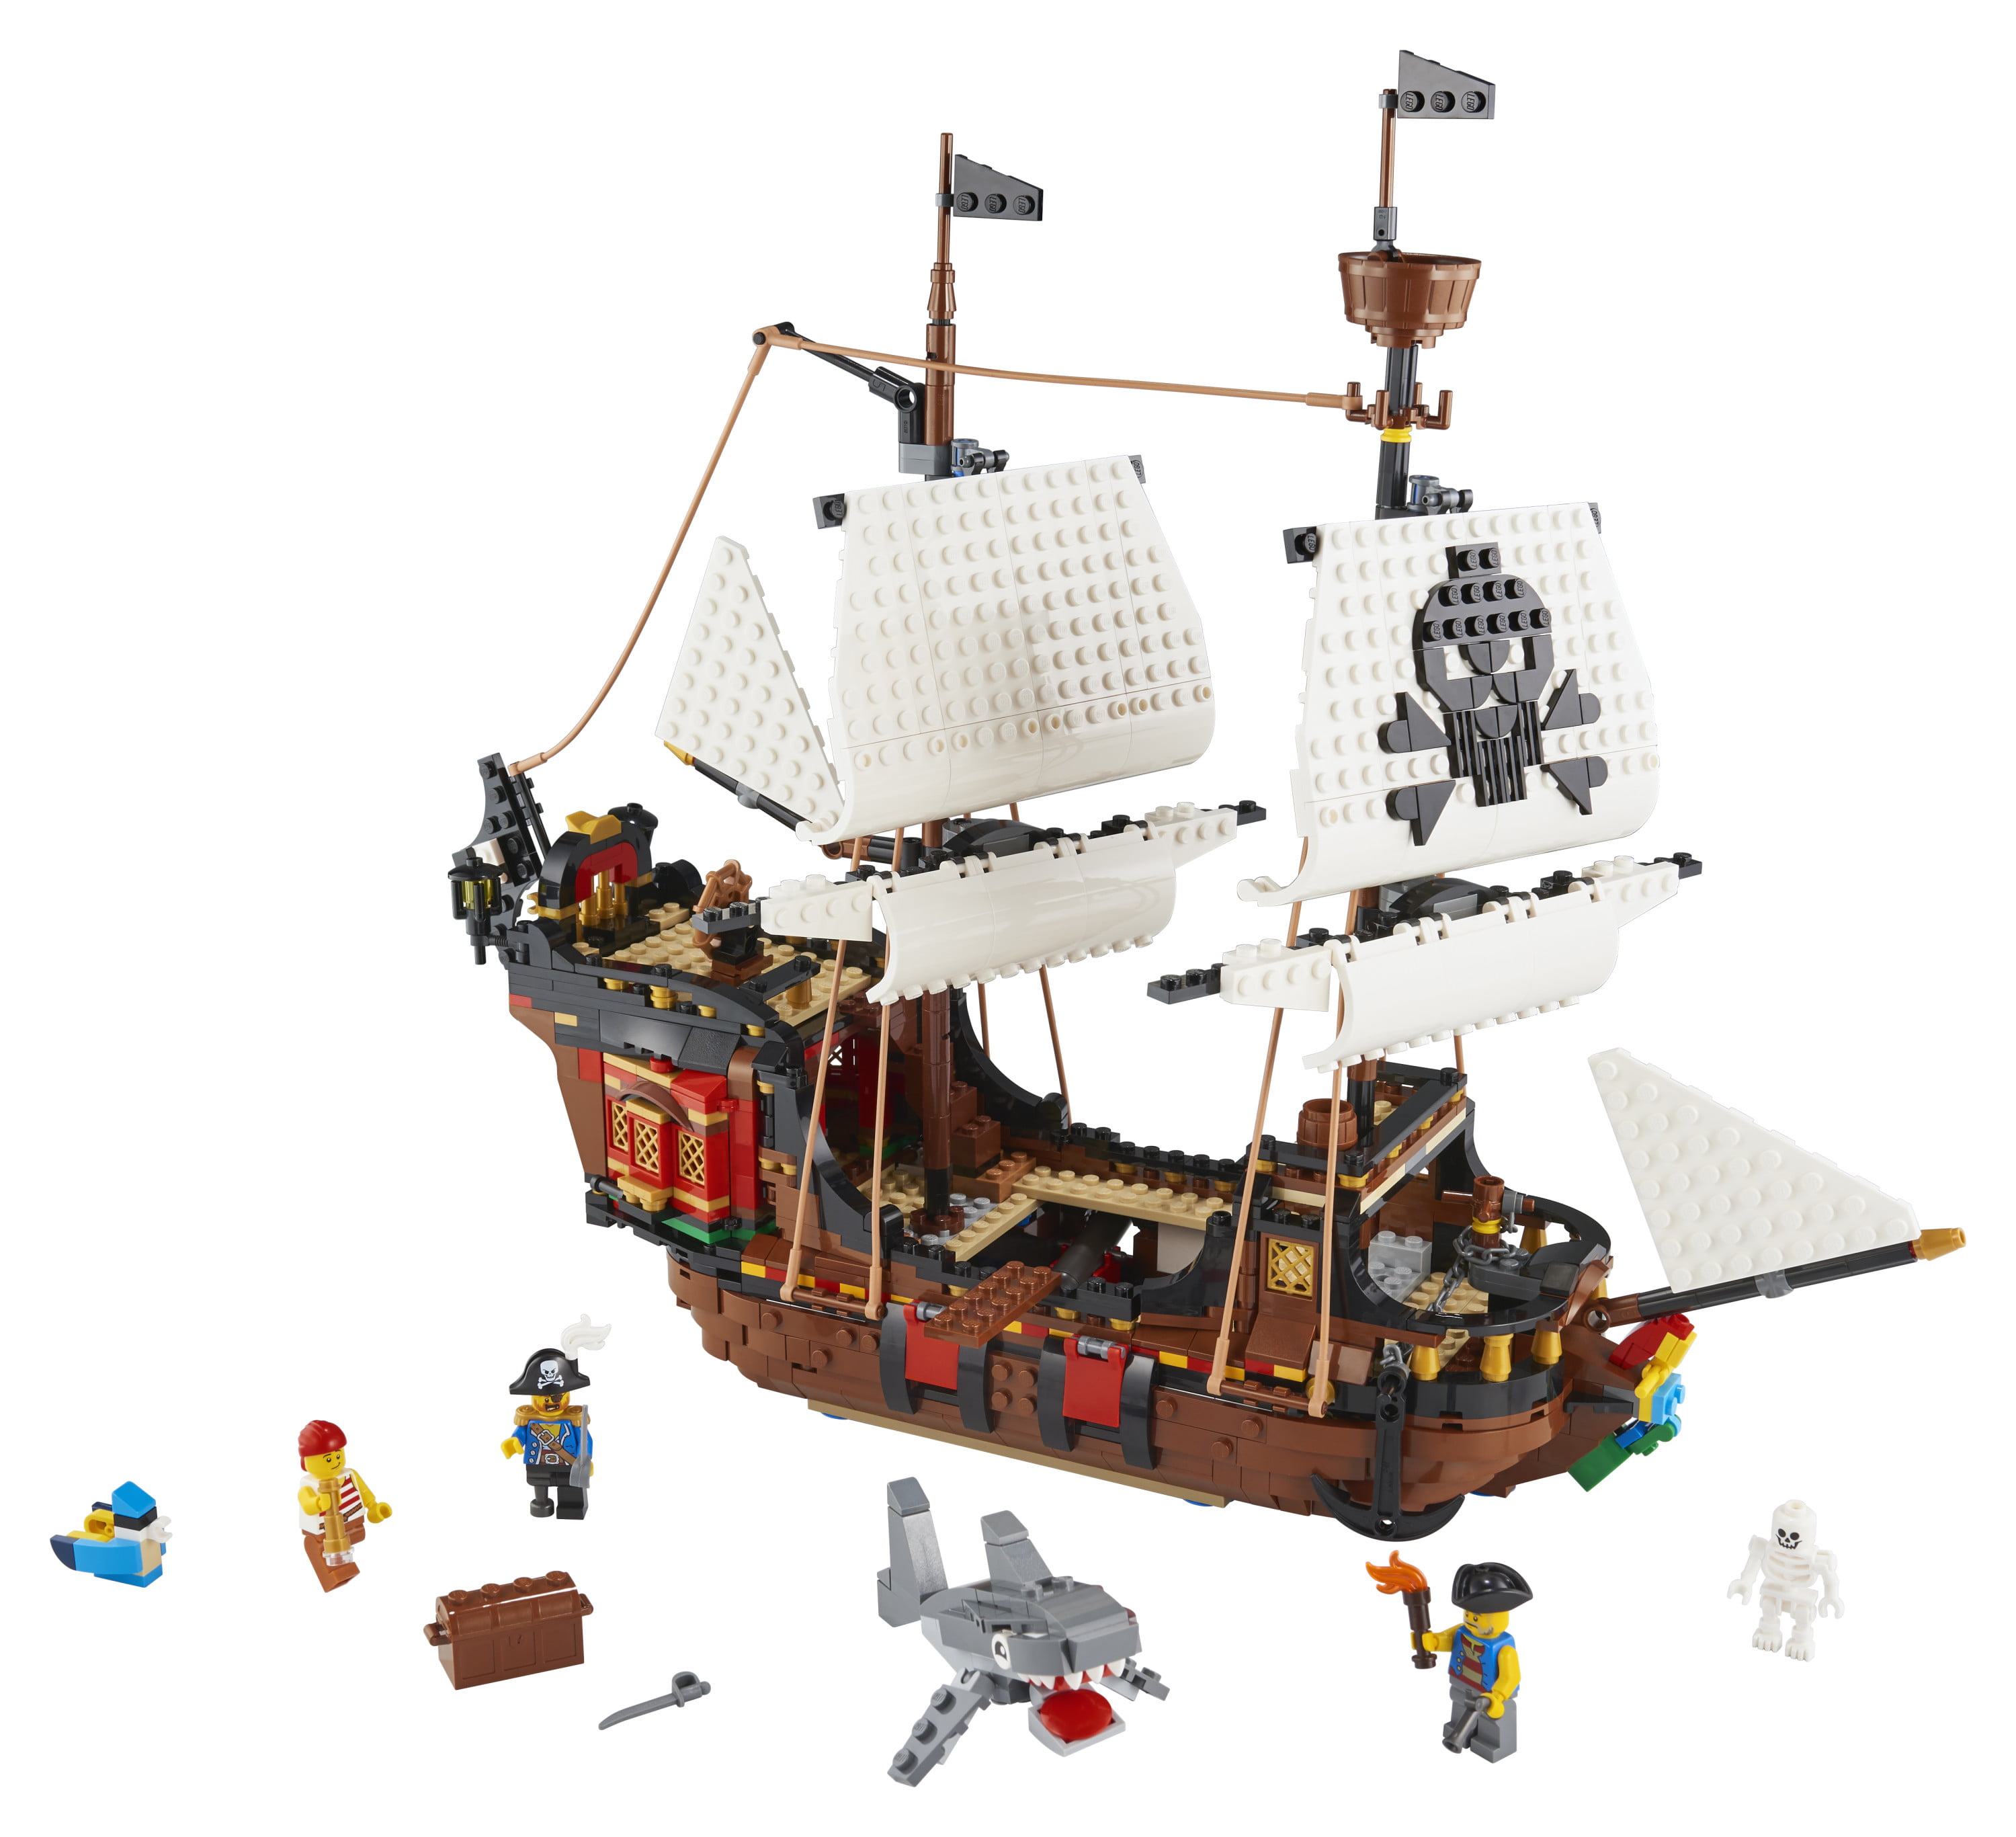 Slip sko Bør Rynke panden Biggest LEGOs Sets - Best LEGO Sets for Adults